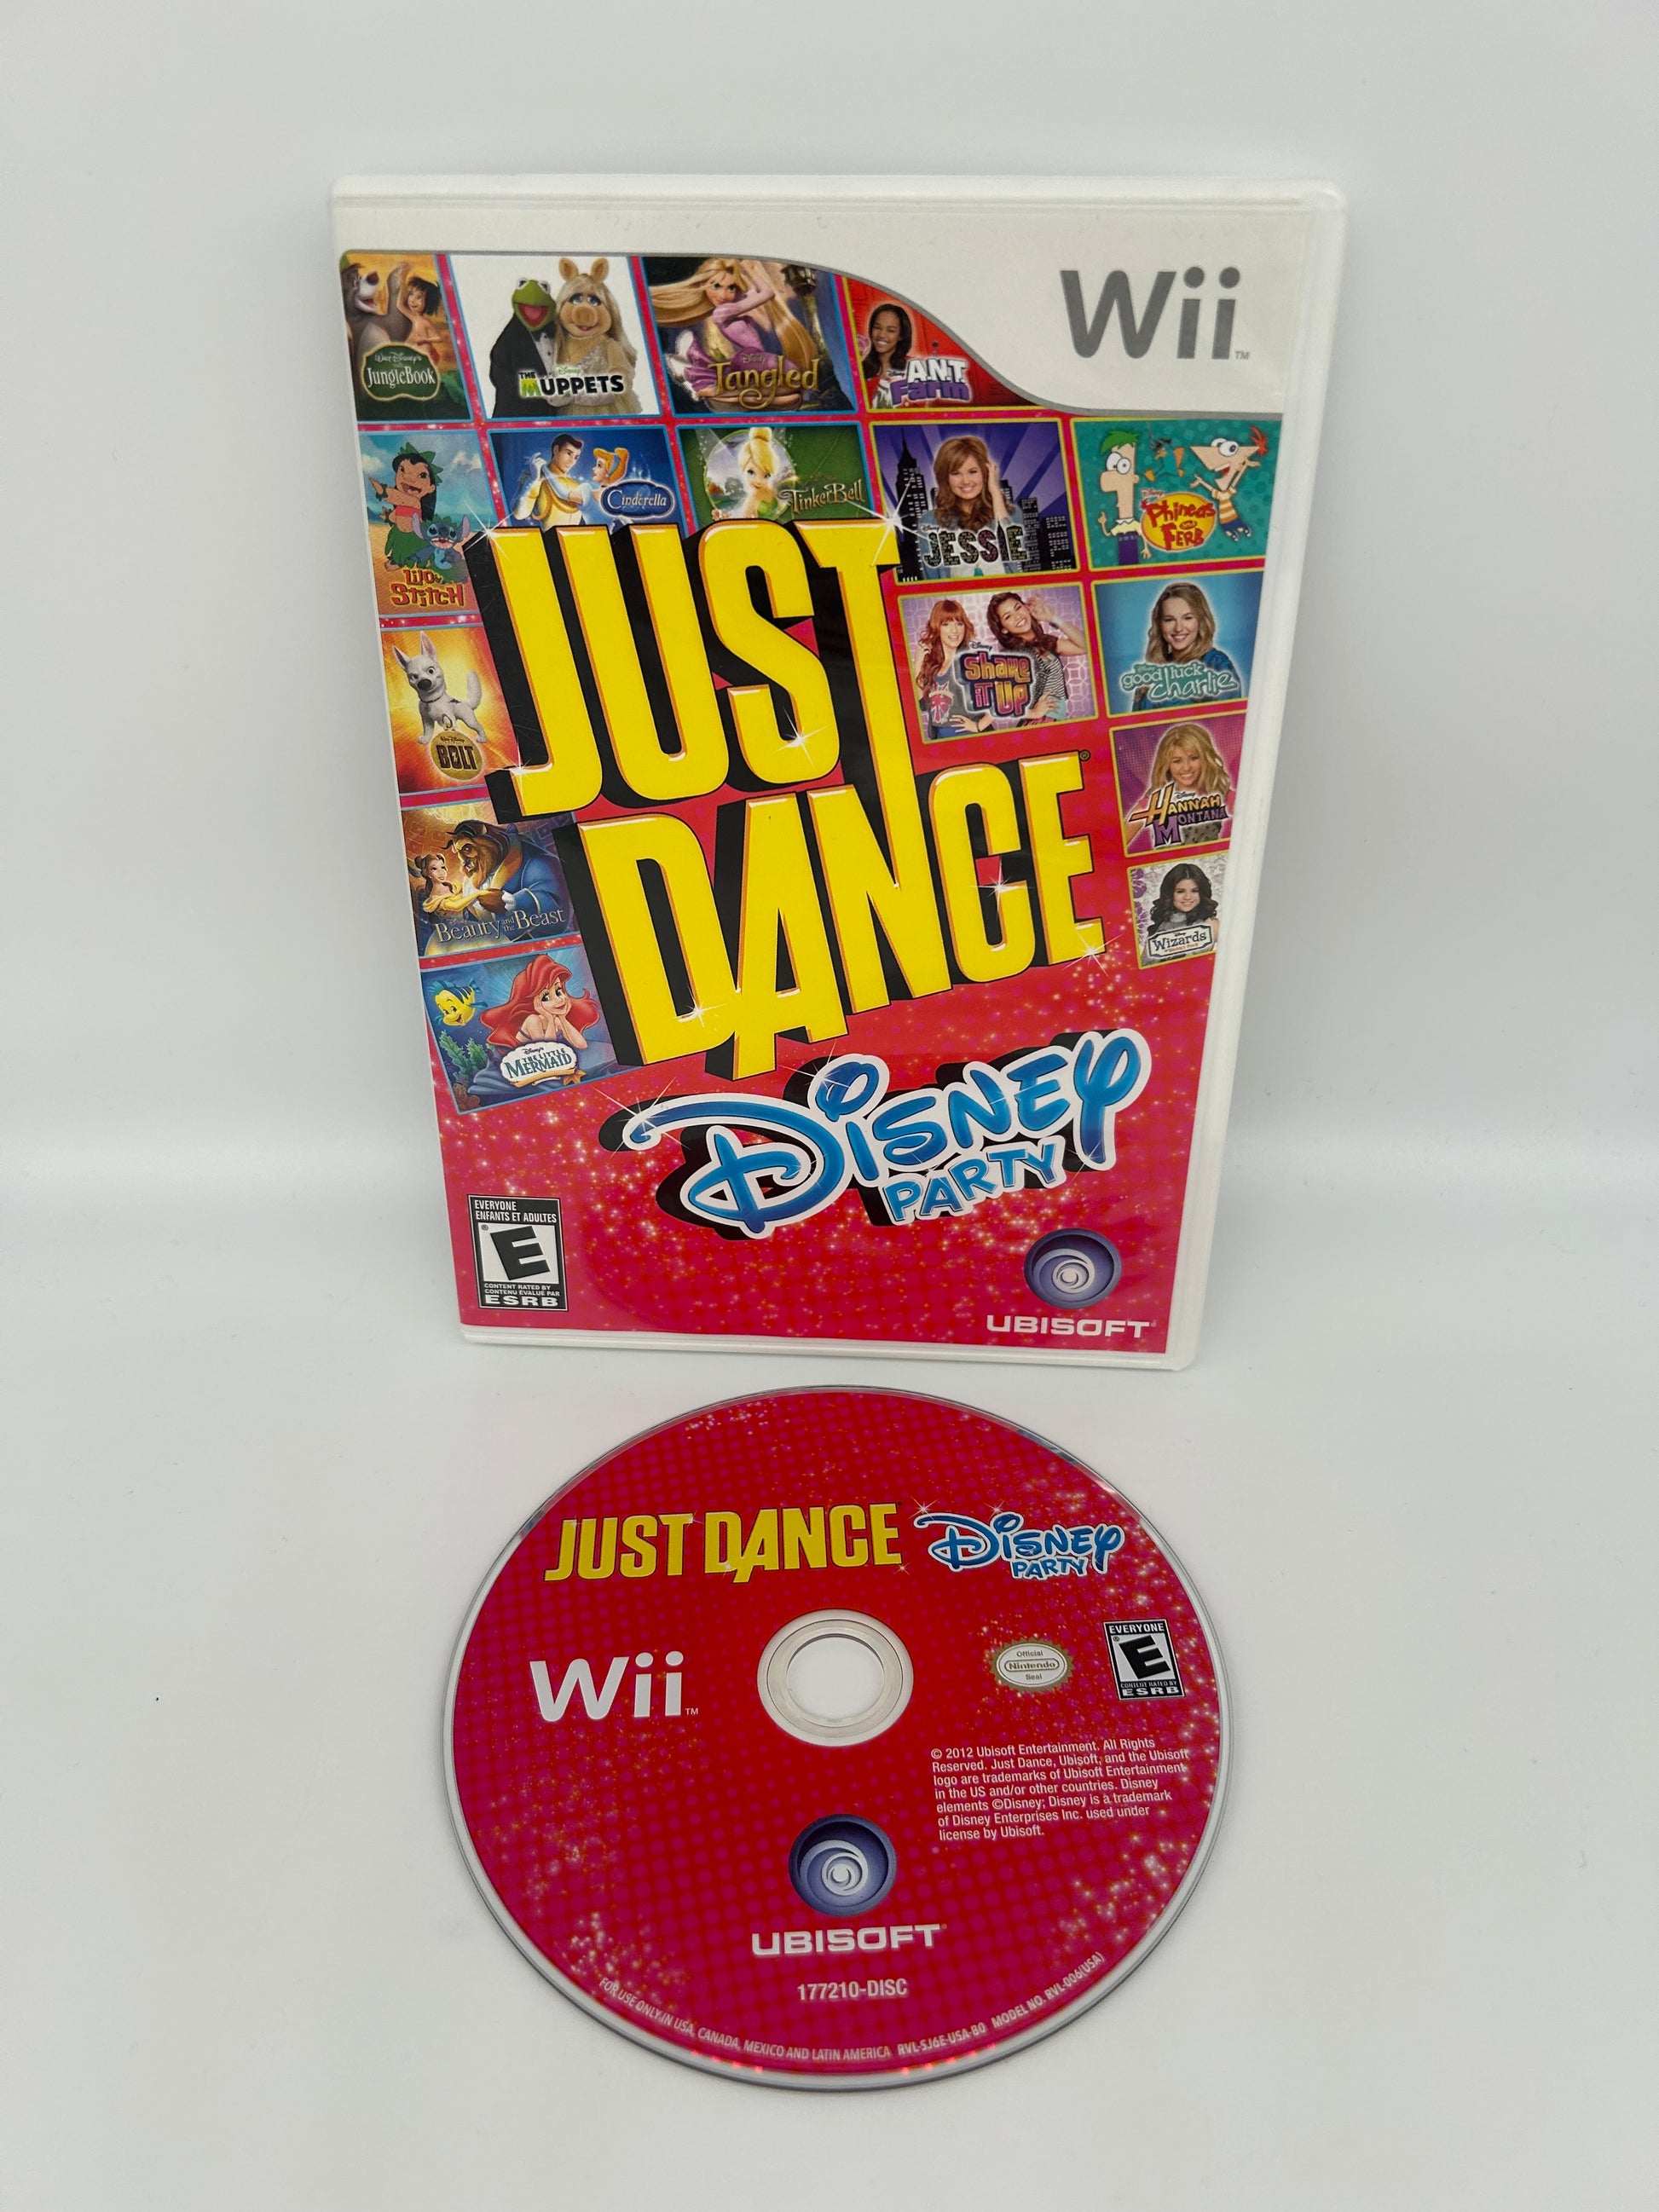 PiXEL-RETRO.COM : NINTENDO WII COMPLET CIB BOX MANUAL GAME NTSC JUST DANCE DISNEY PARTY